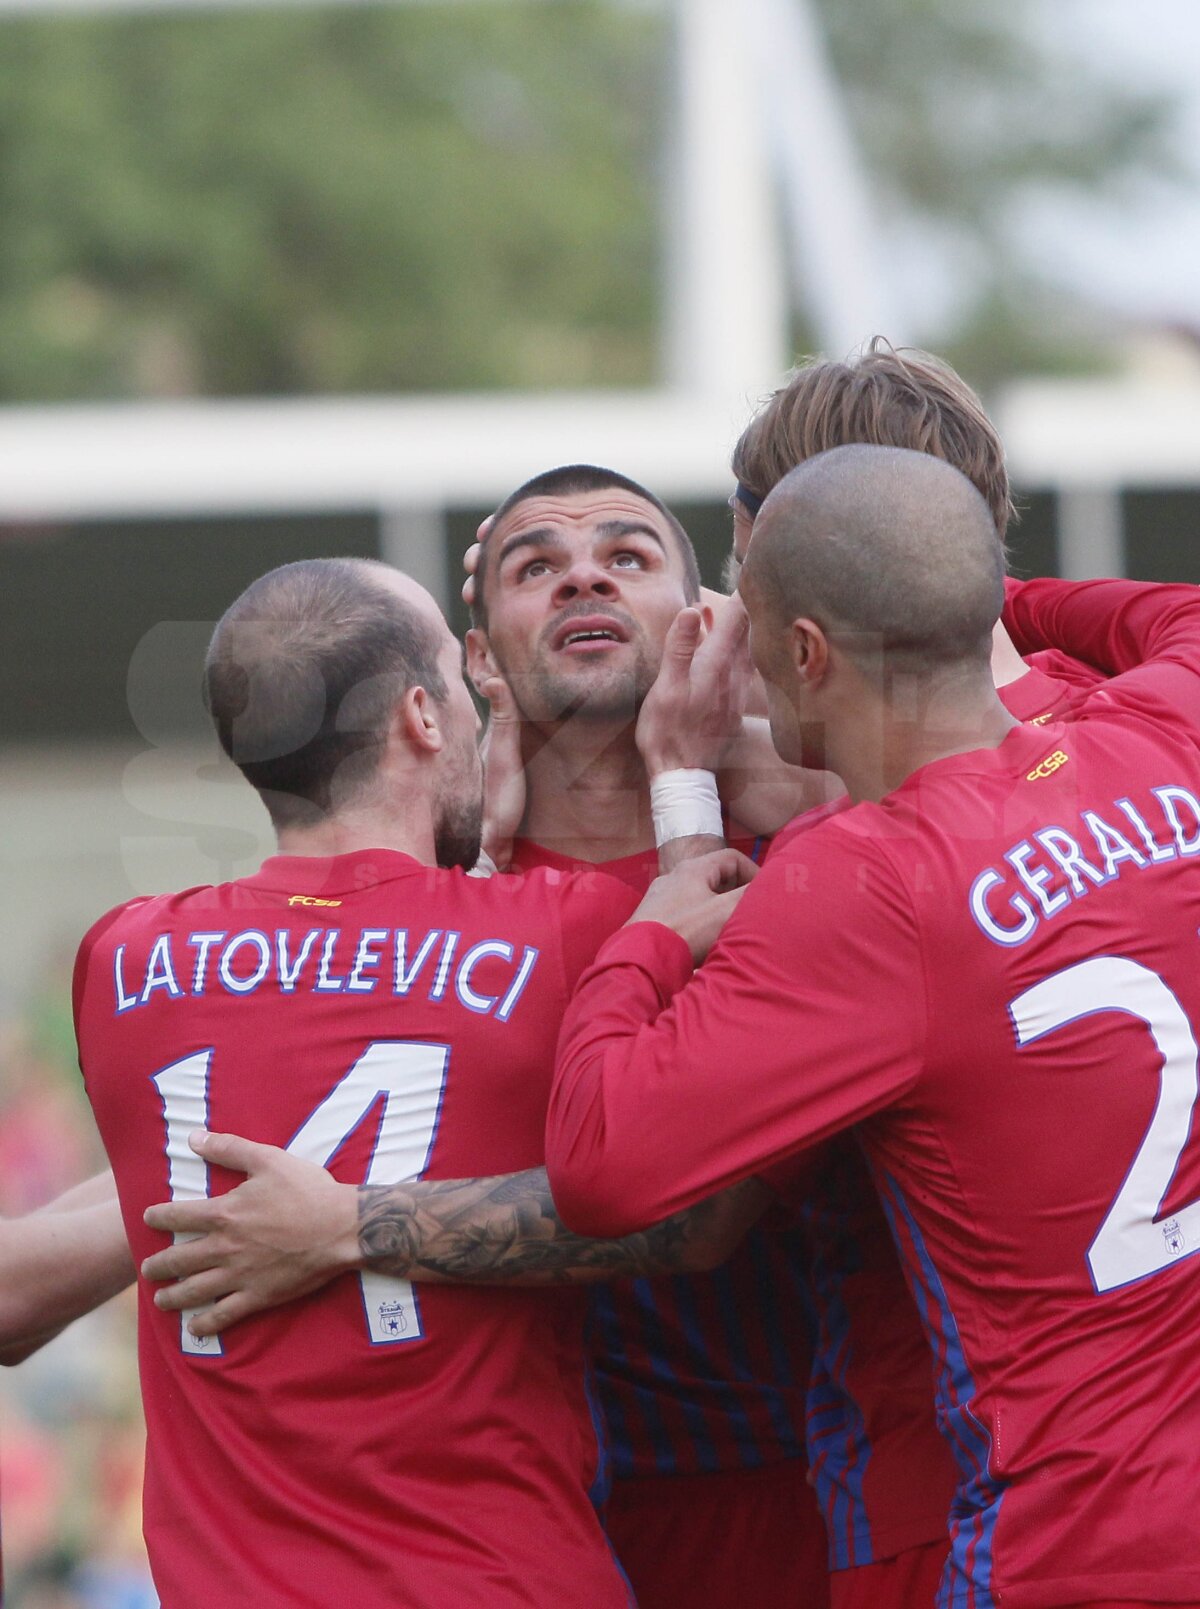 VIDEO Steaua rămîne în lupta pentru titlu! Concordia - Steaua 0-2 (Iliev '8, Martinovici 72')